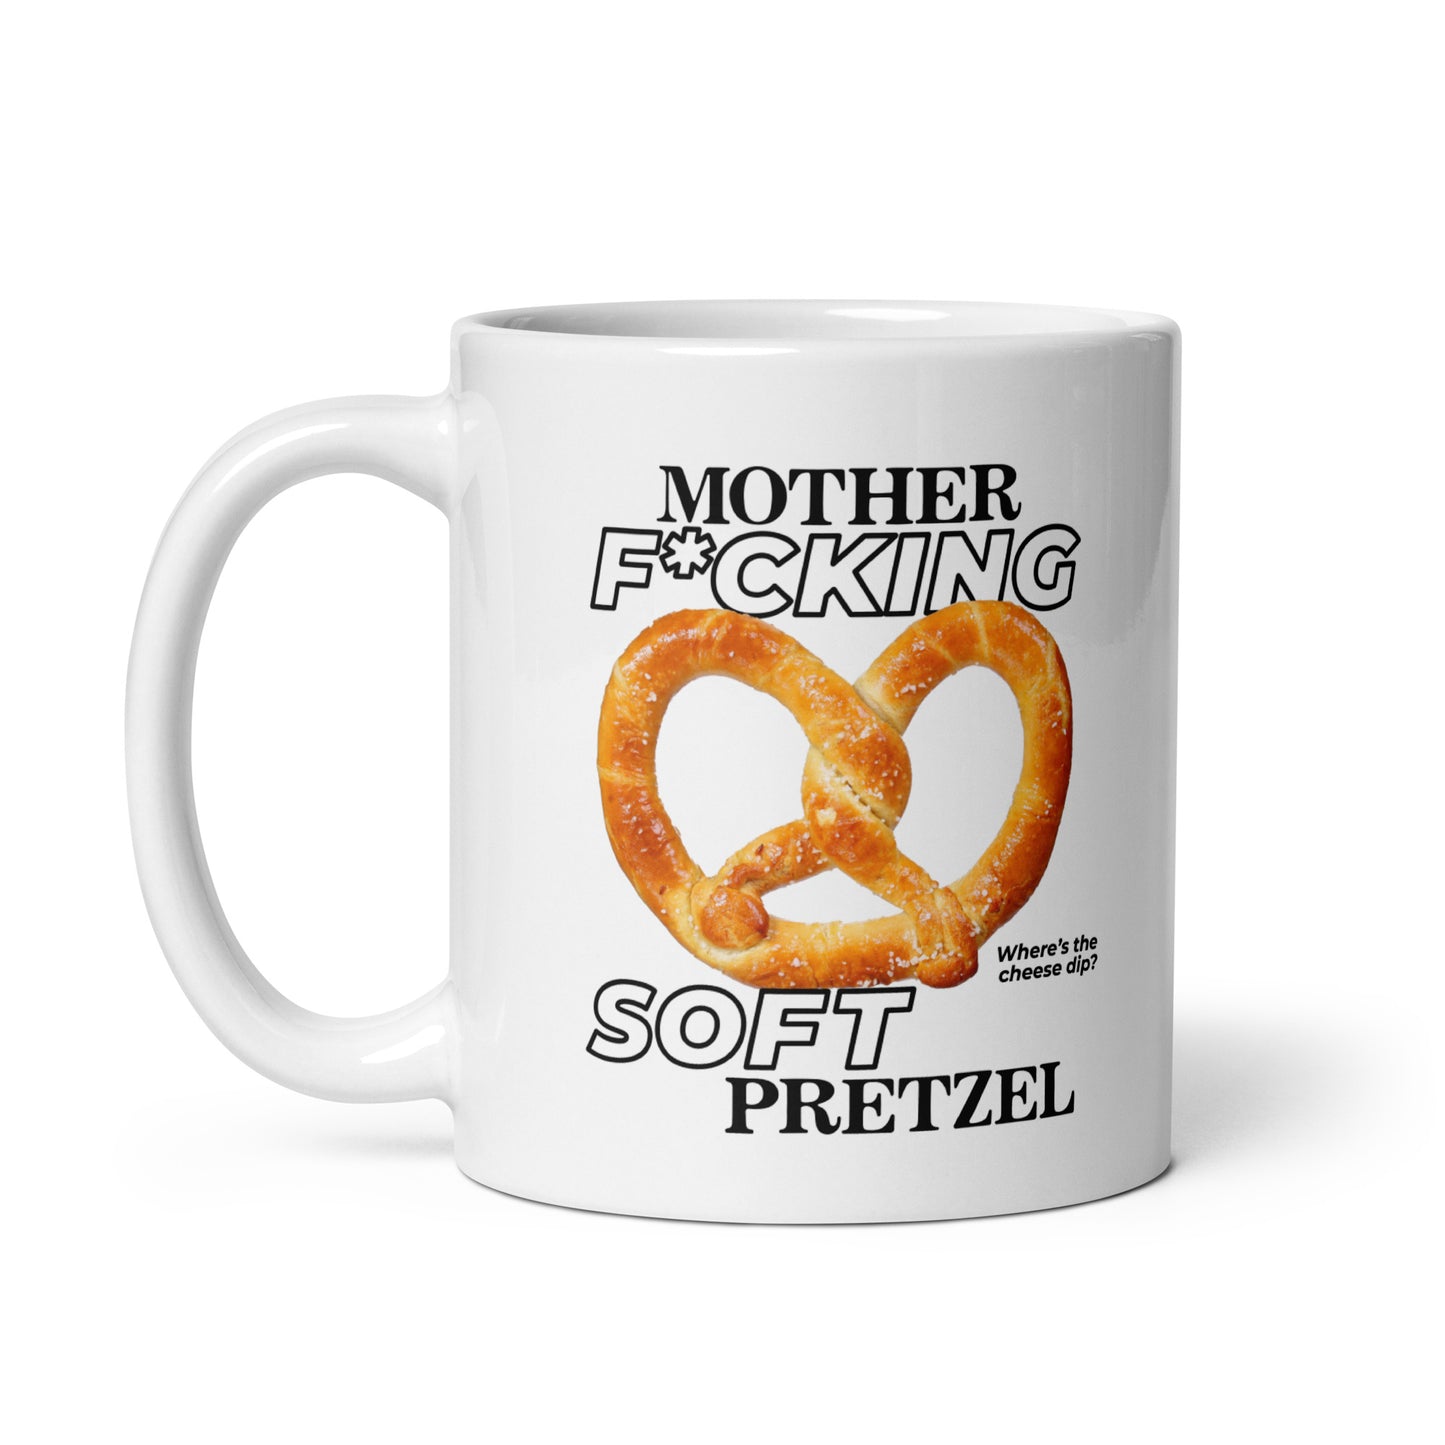 Mother F*cking Soft Pretzel mug